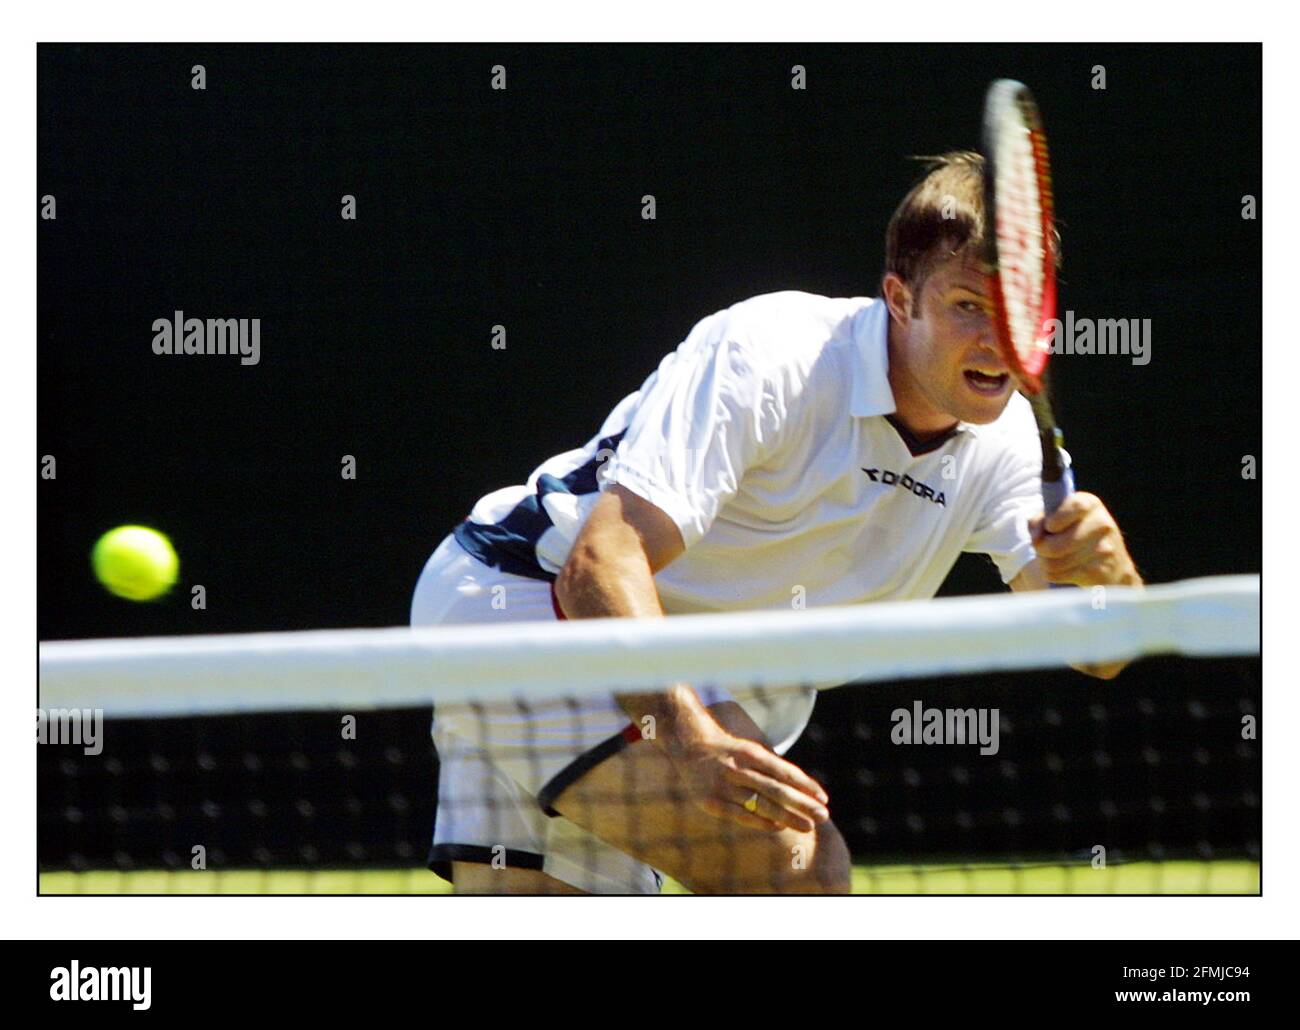 Wimbledon Día 3...Barry Cowan (GBR) que perdió ante Nicholas Lapenti (ECU) Pic. David Sandison 26/6/2002 Foto de stock